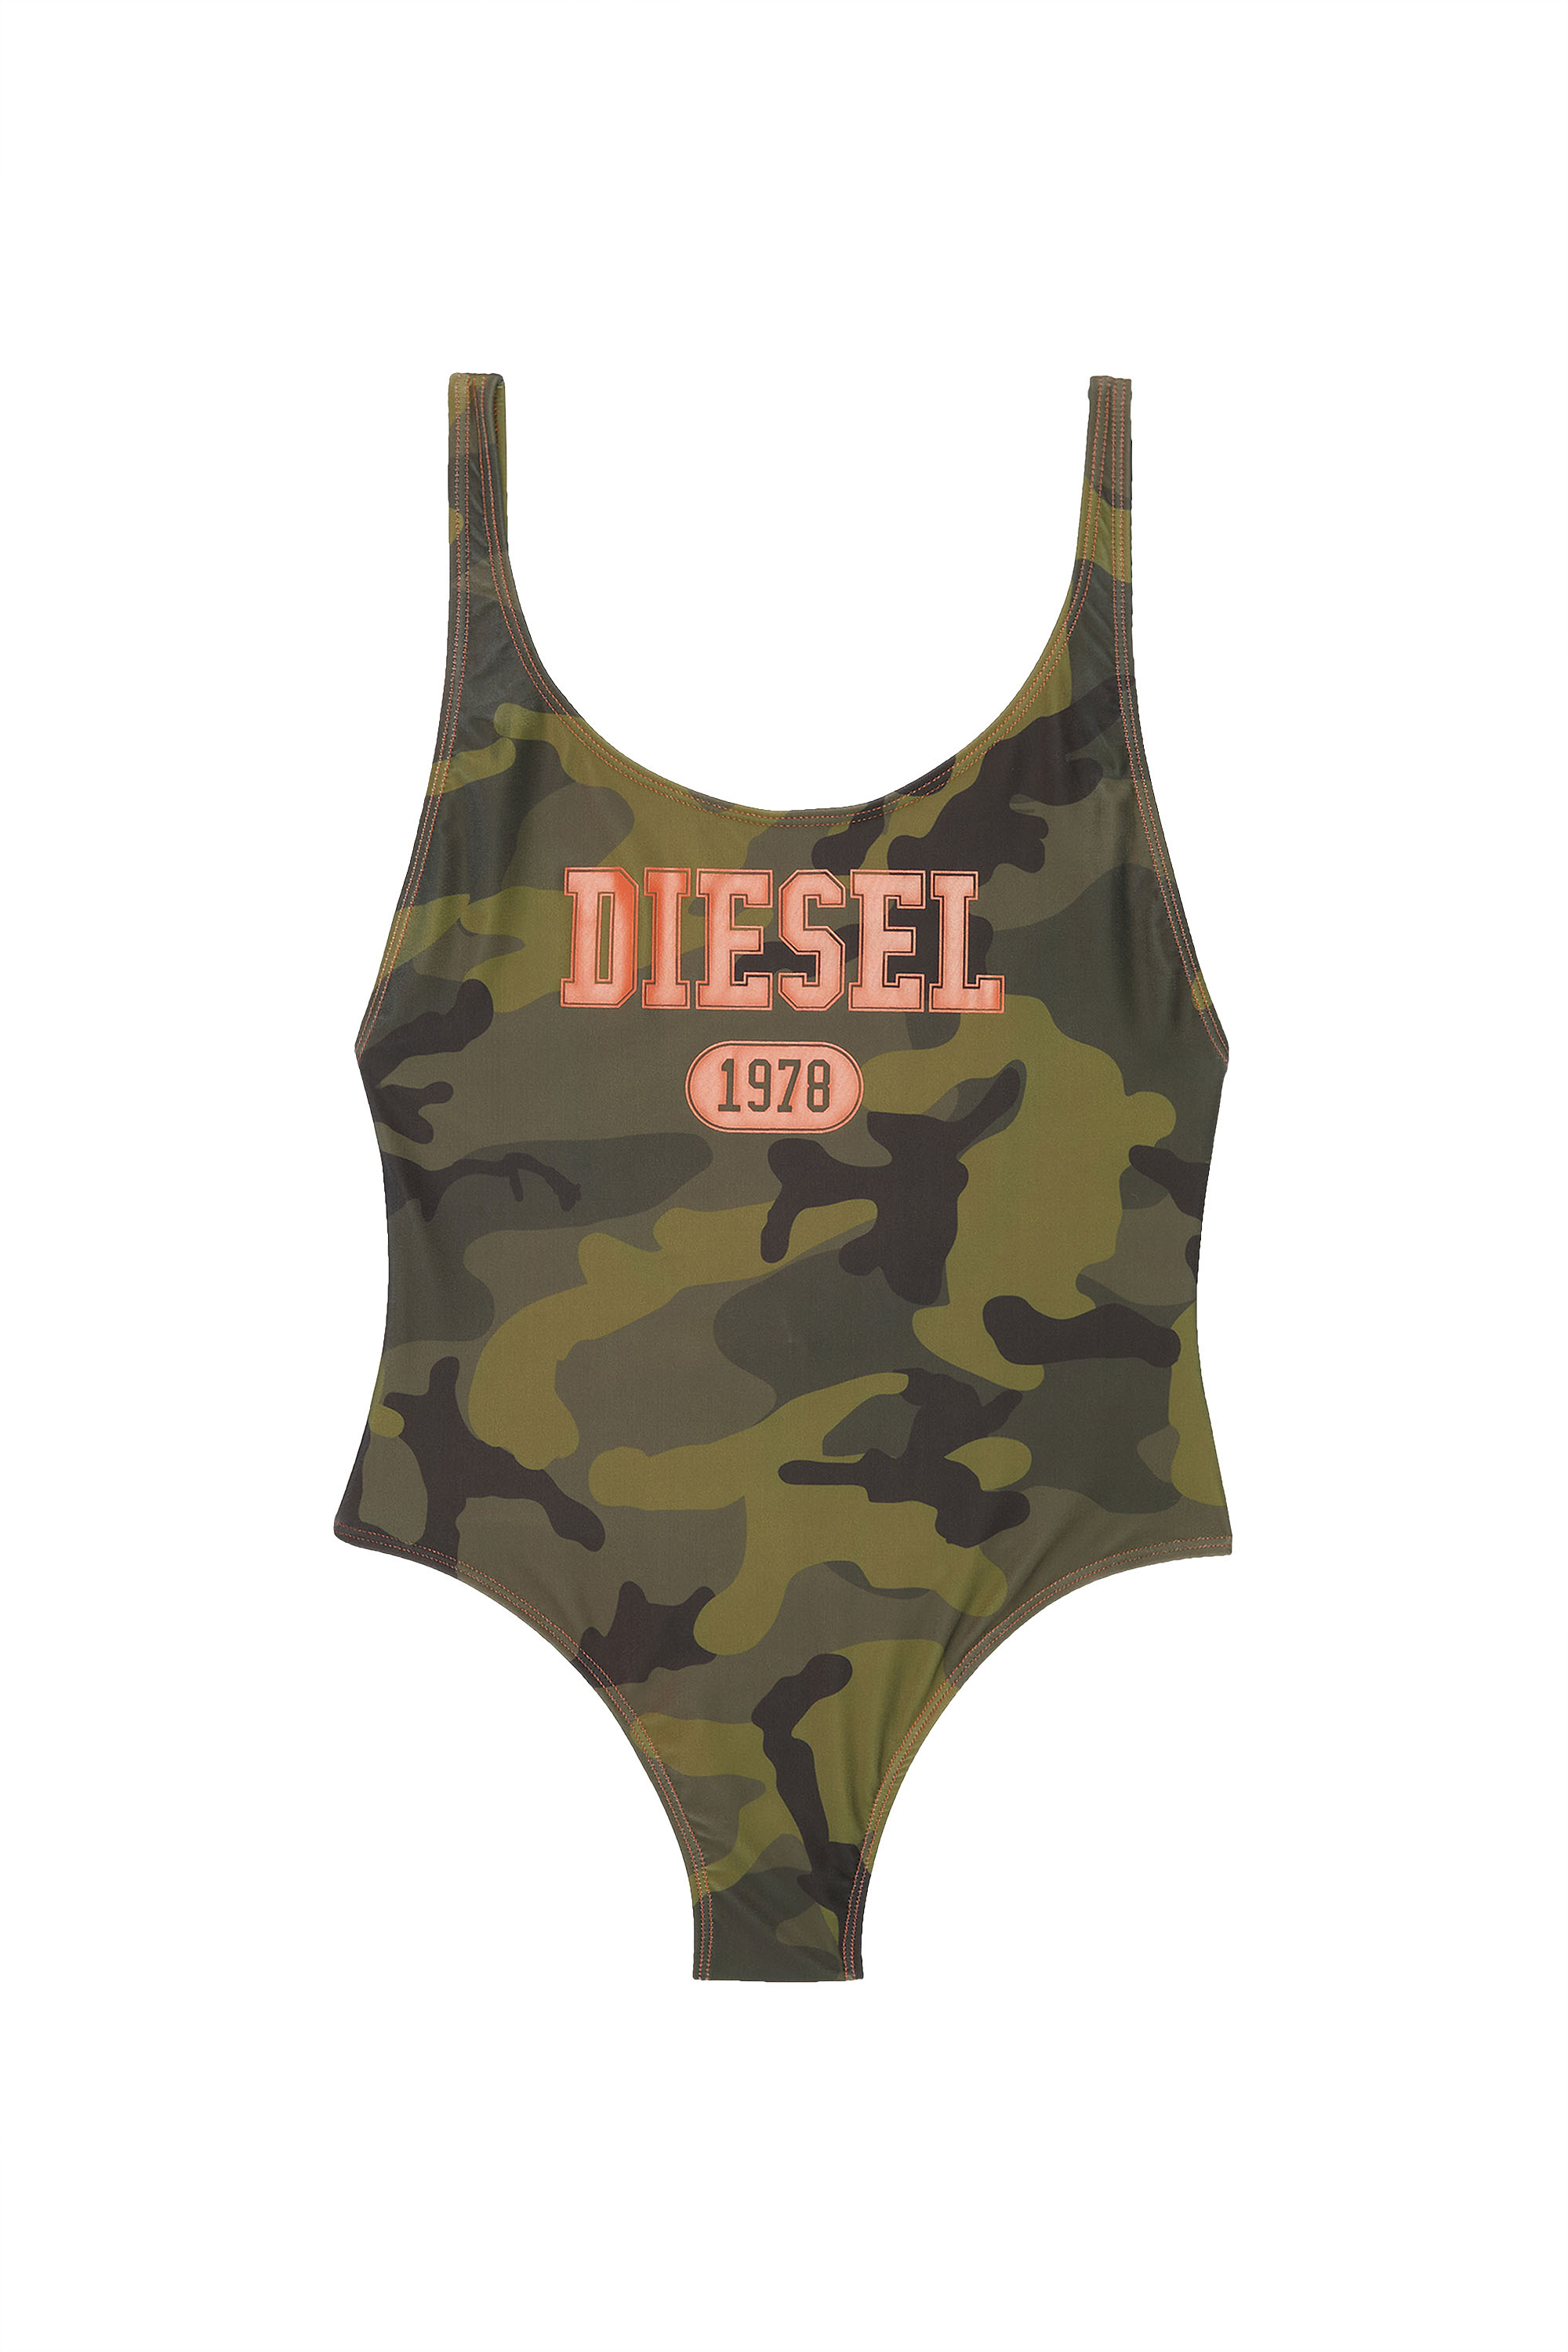 Diesel - BFSW-SLIA, Armeegrün - Image 1